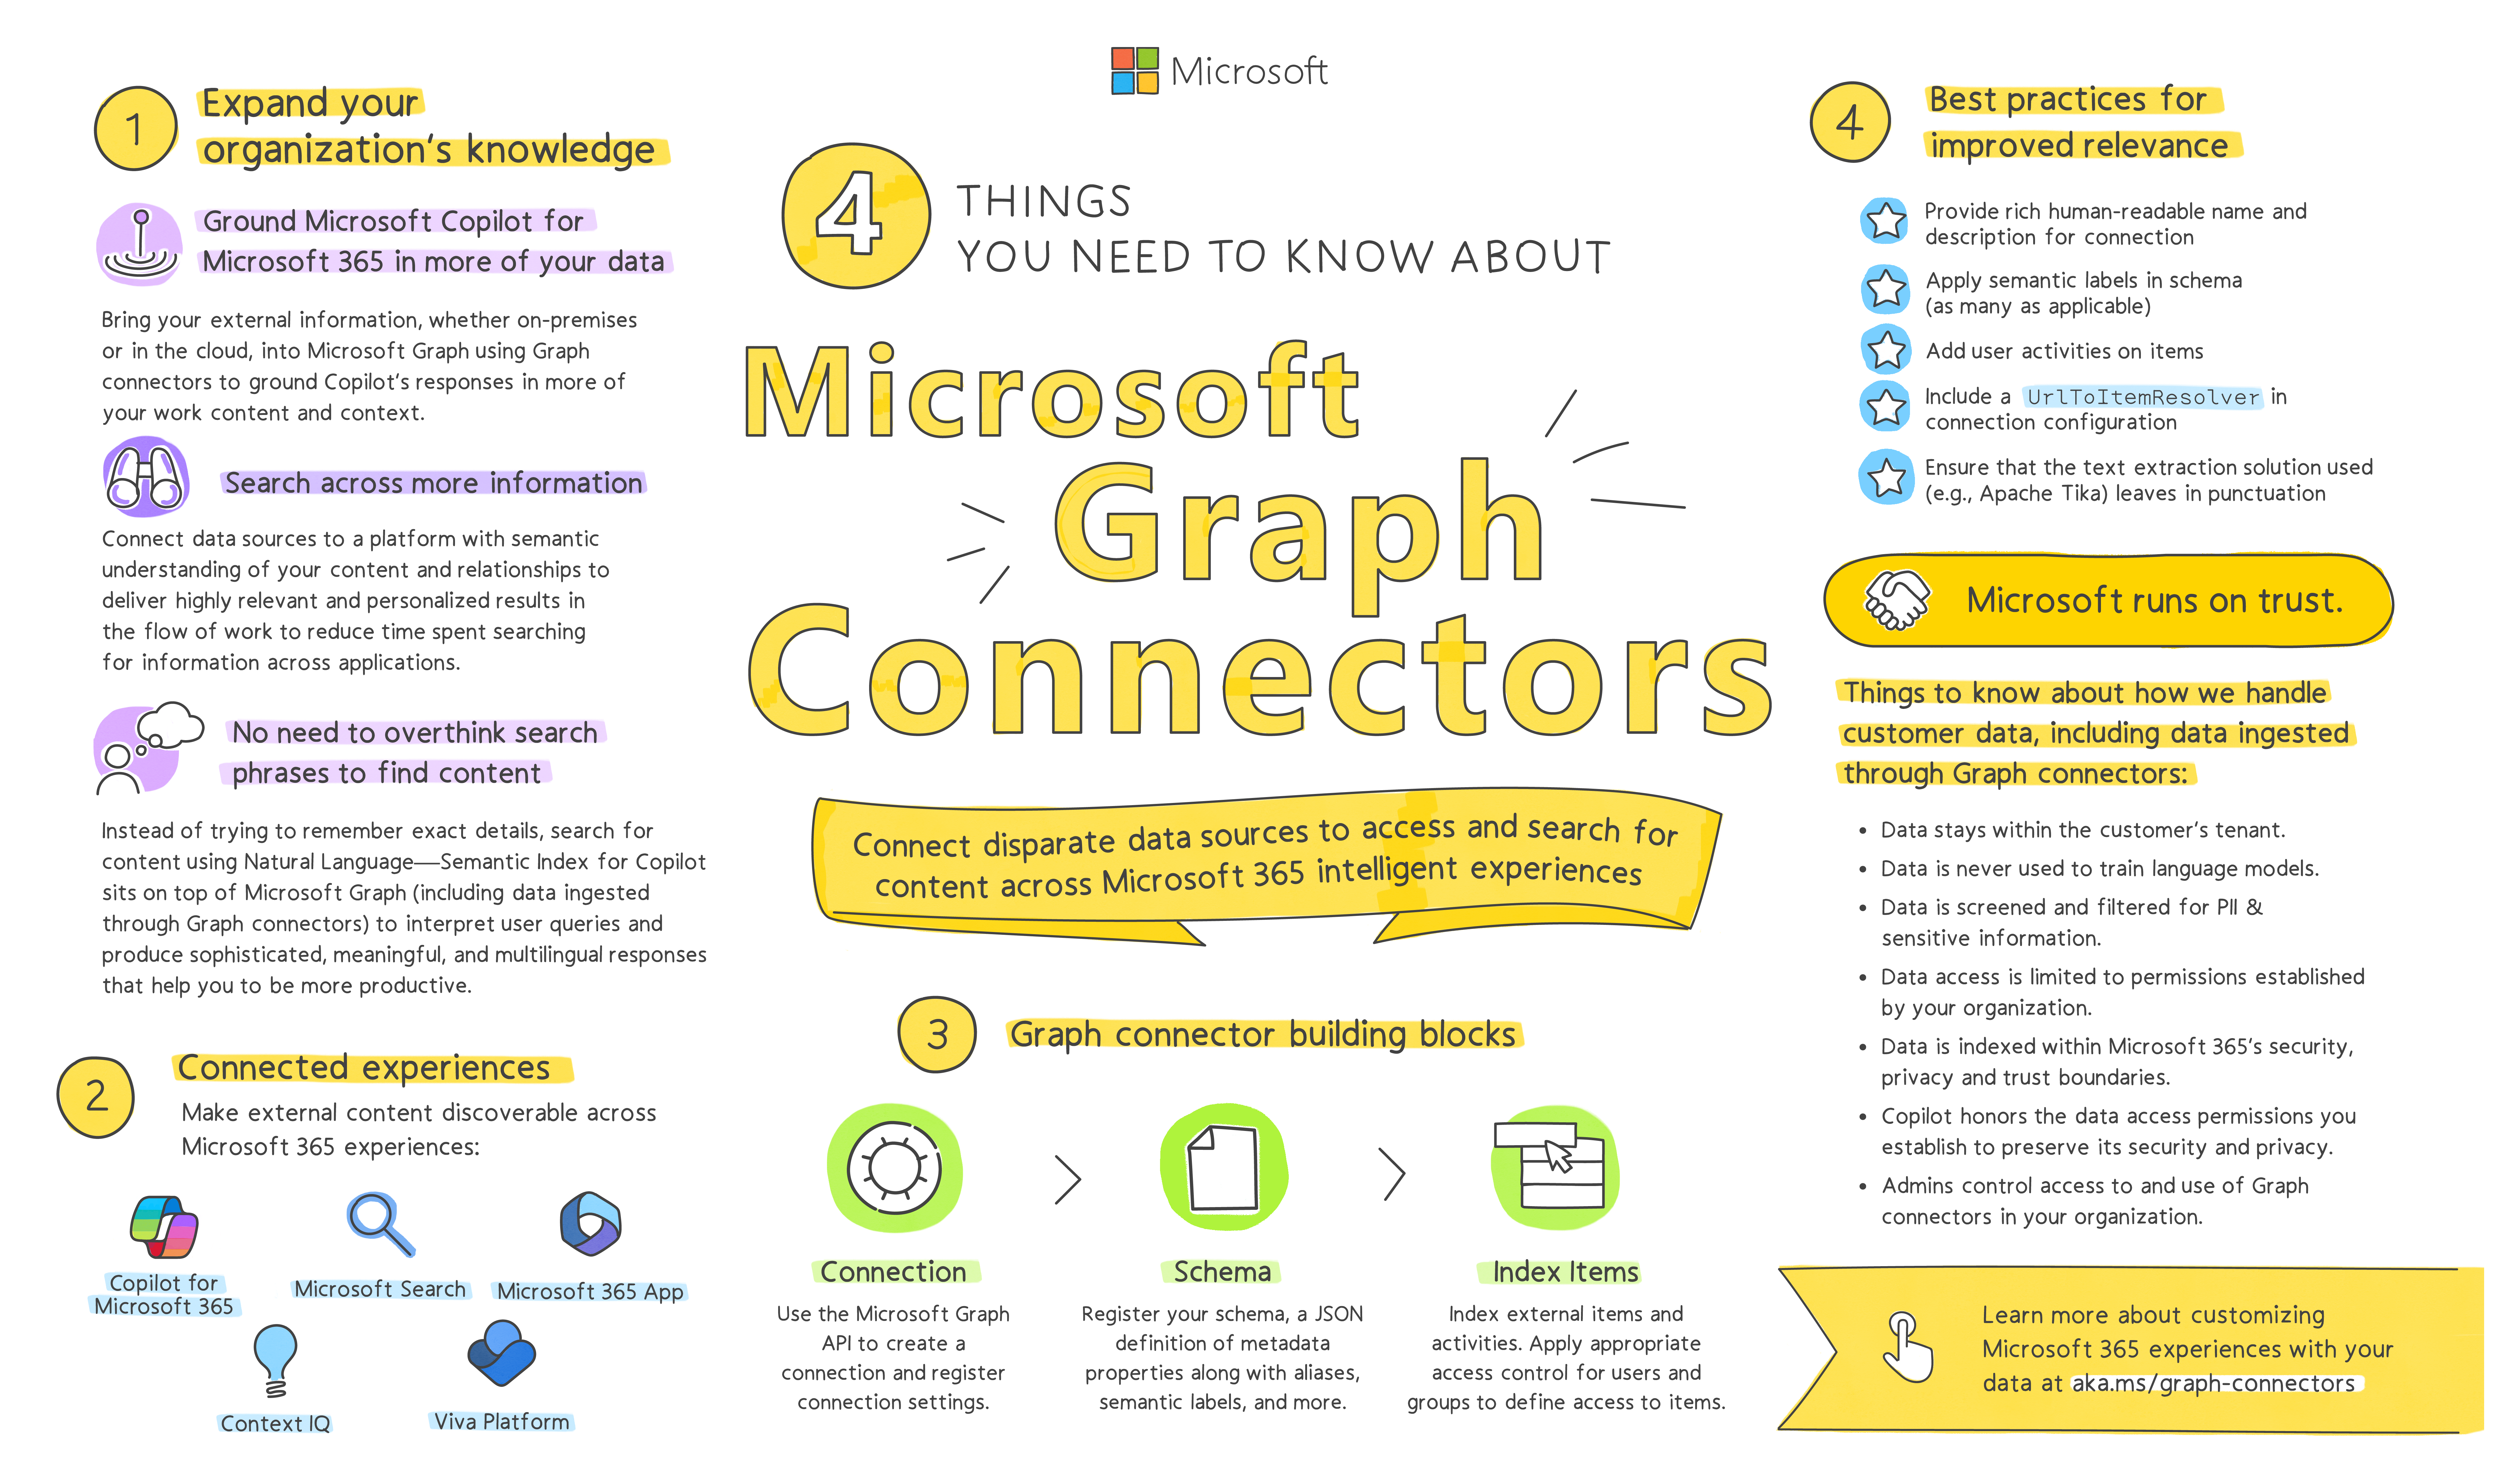 このインフォグラフィックは、Microsoft Graph コネクタが Microsoft 365 インテリジェント エクスペリエンスでデータを利用できるようにする方法をまとめたものです